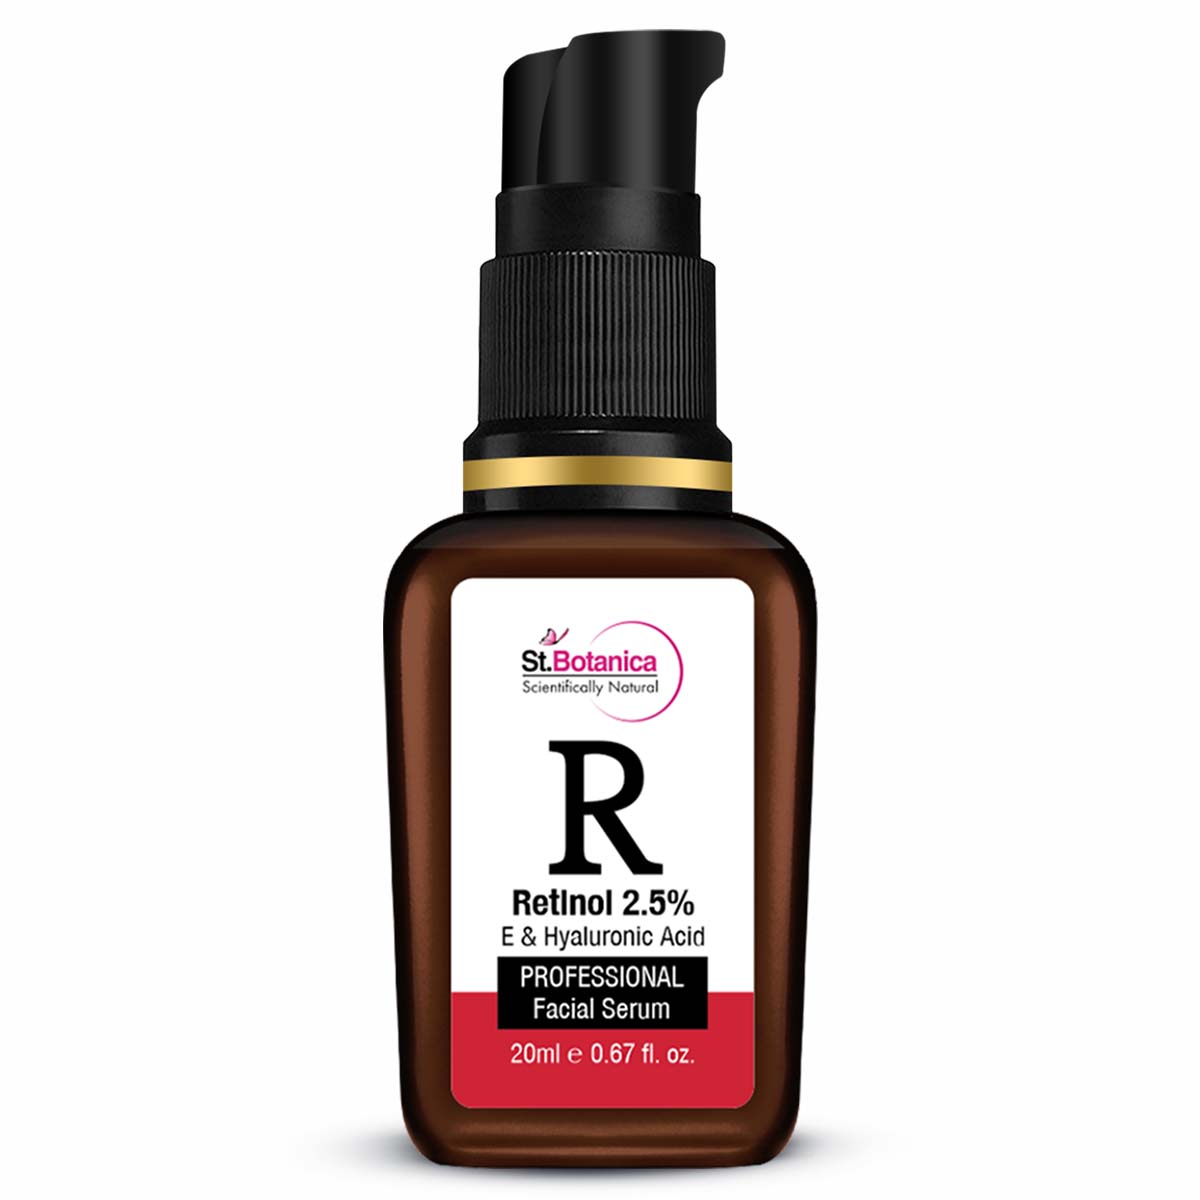 St.Botanica Retinol 2.5% + Hyaluronic Acid Face Serum - Anti Aging/Wrinkle Face Serum, 20 ml